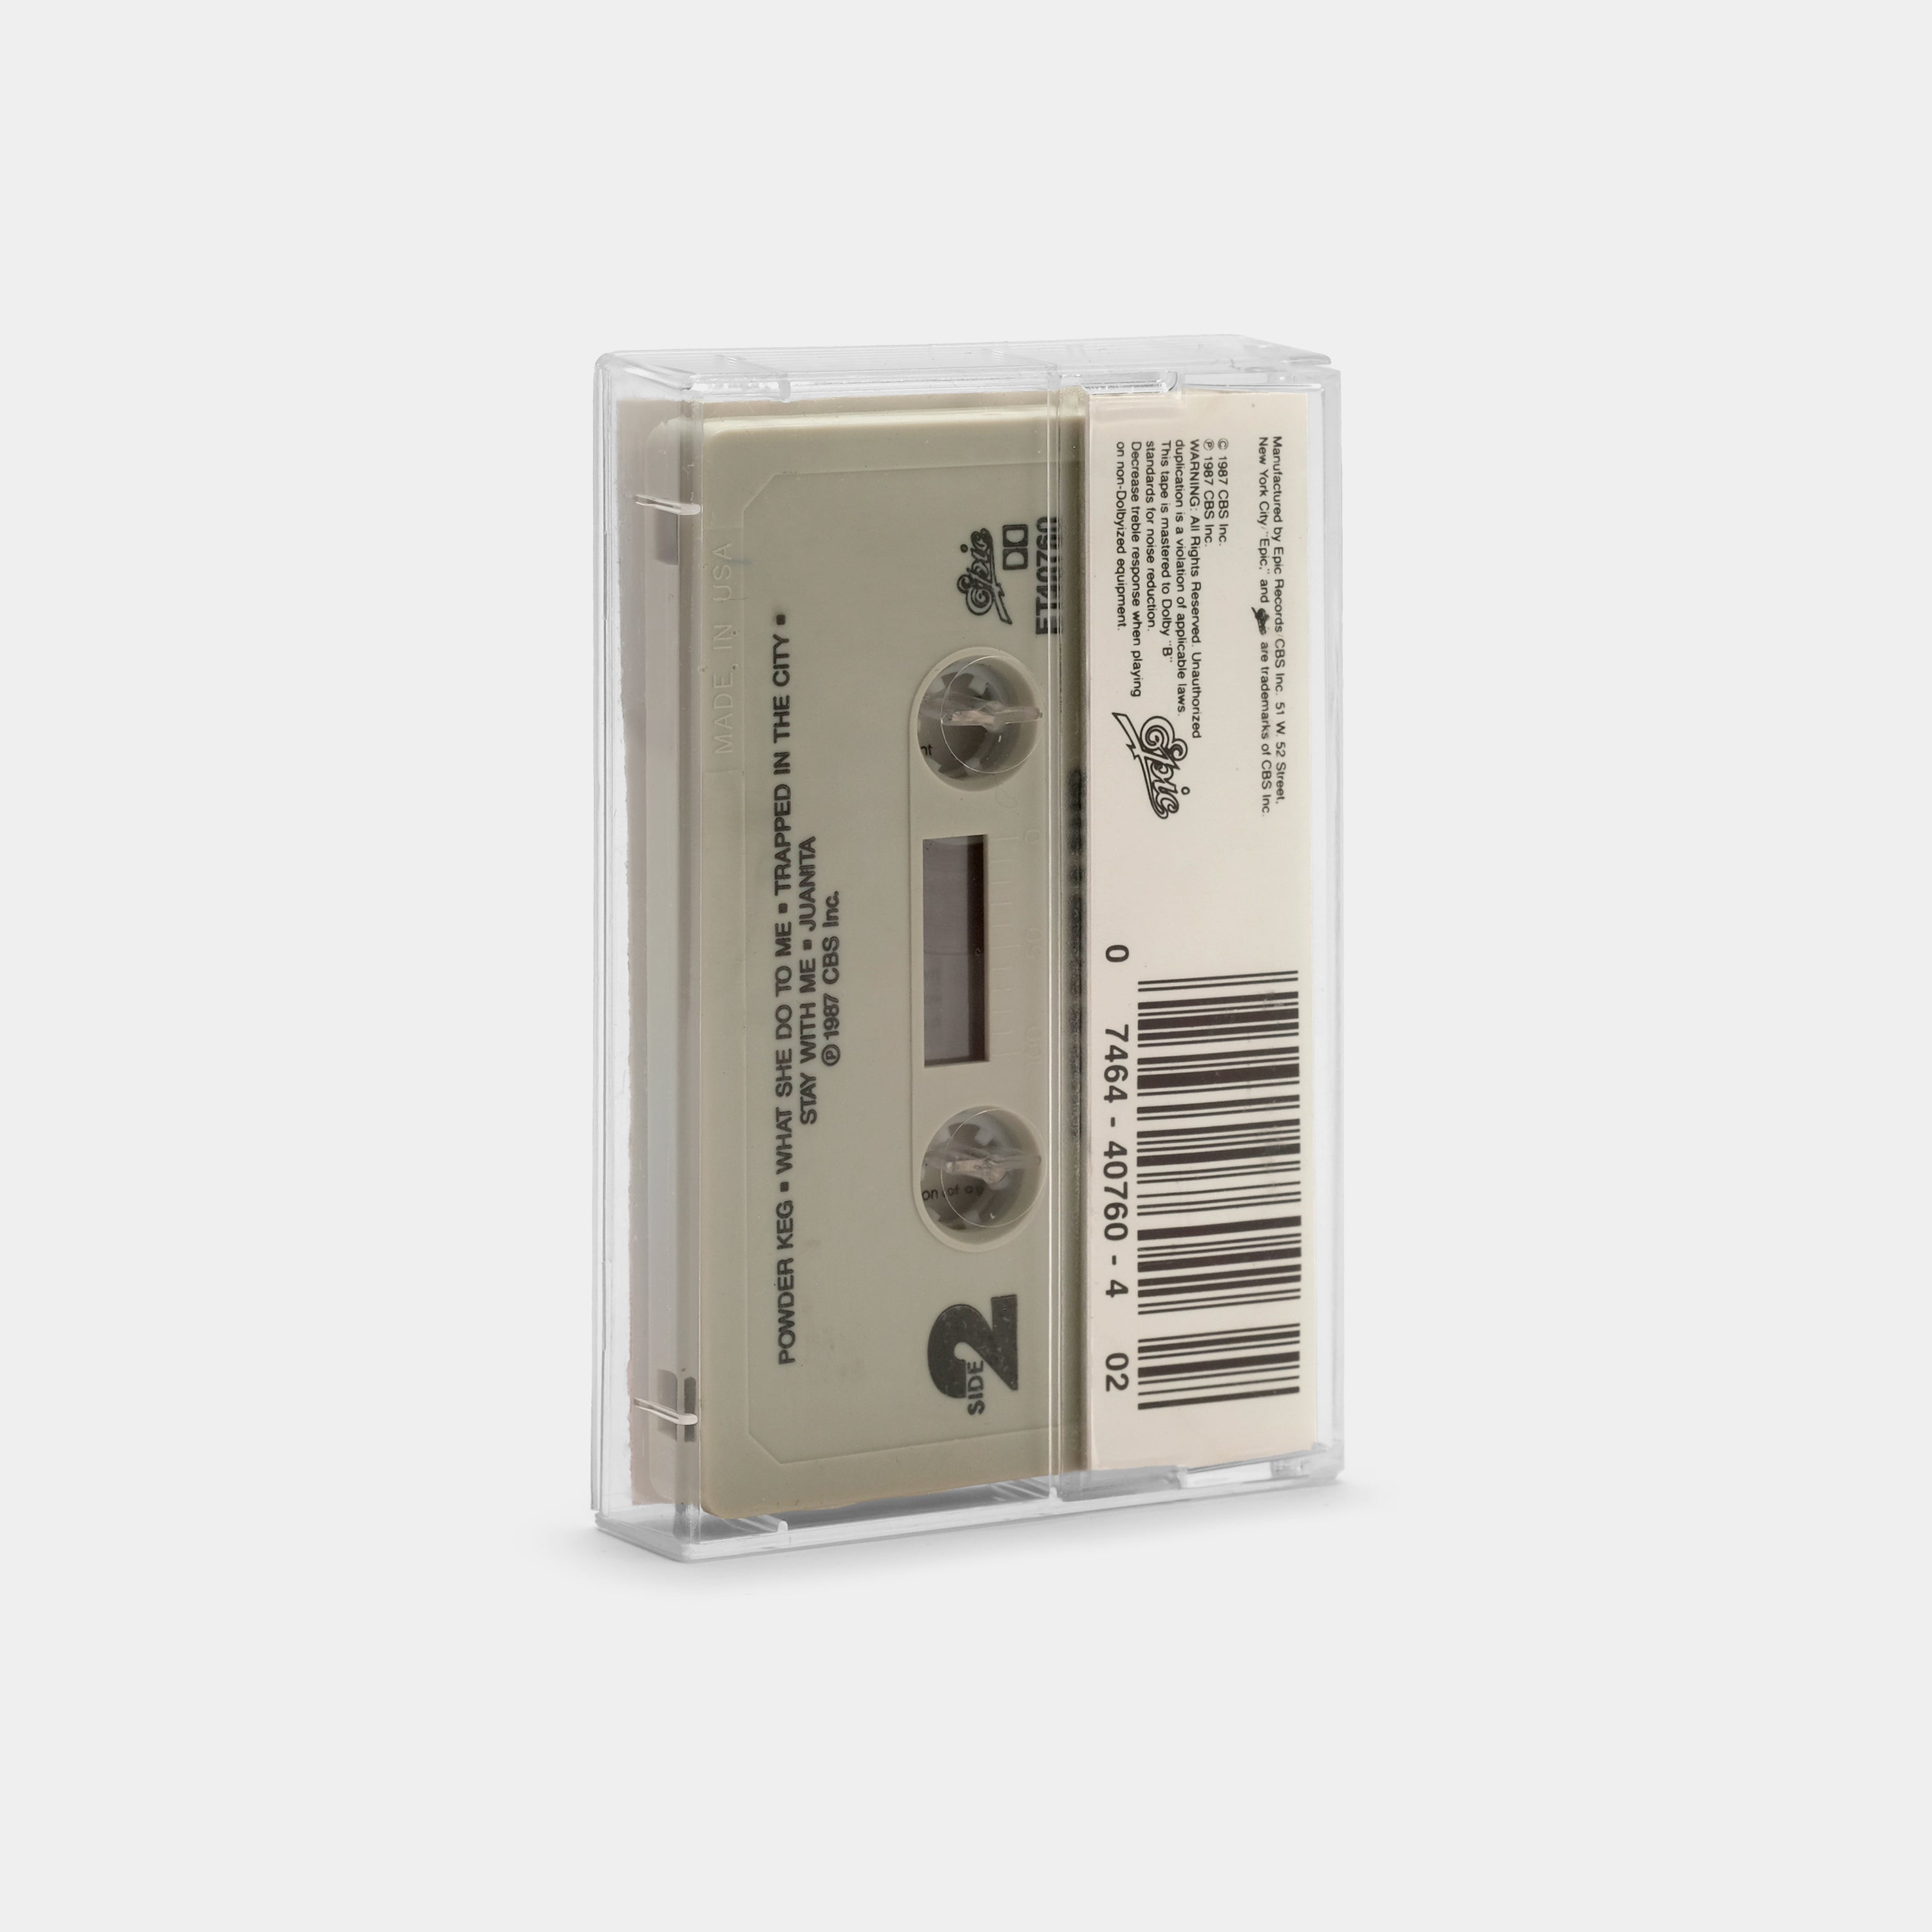 The Charlie Daniels Band - Powder Keg Cassette Tape